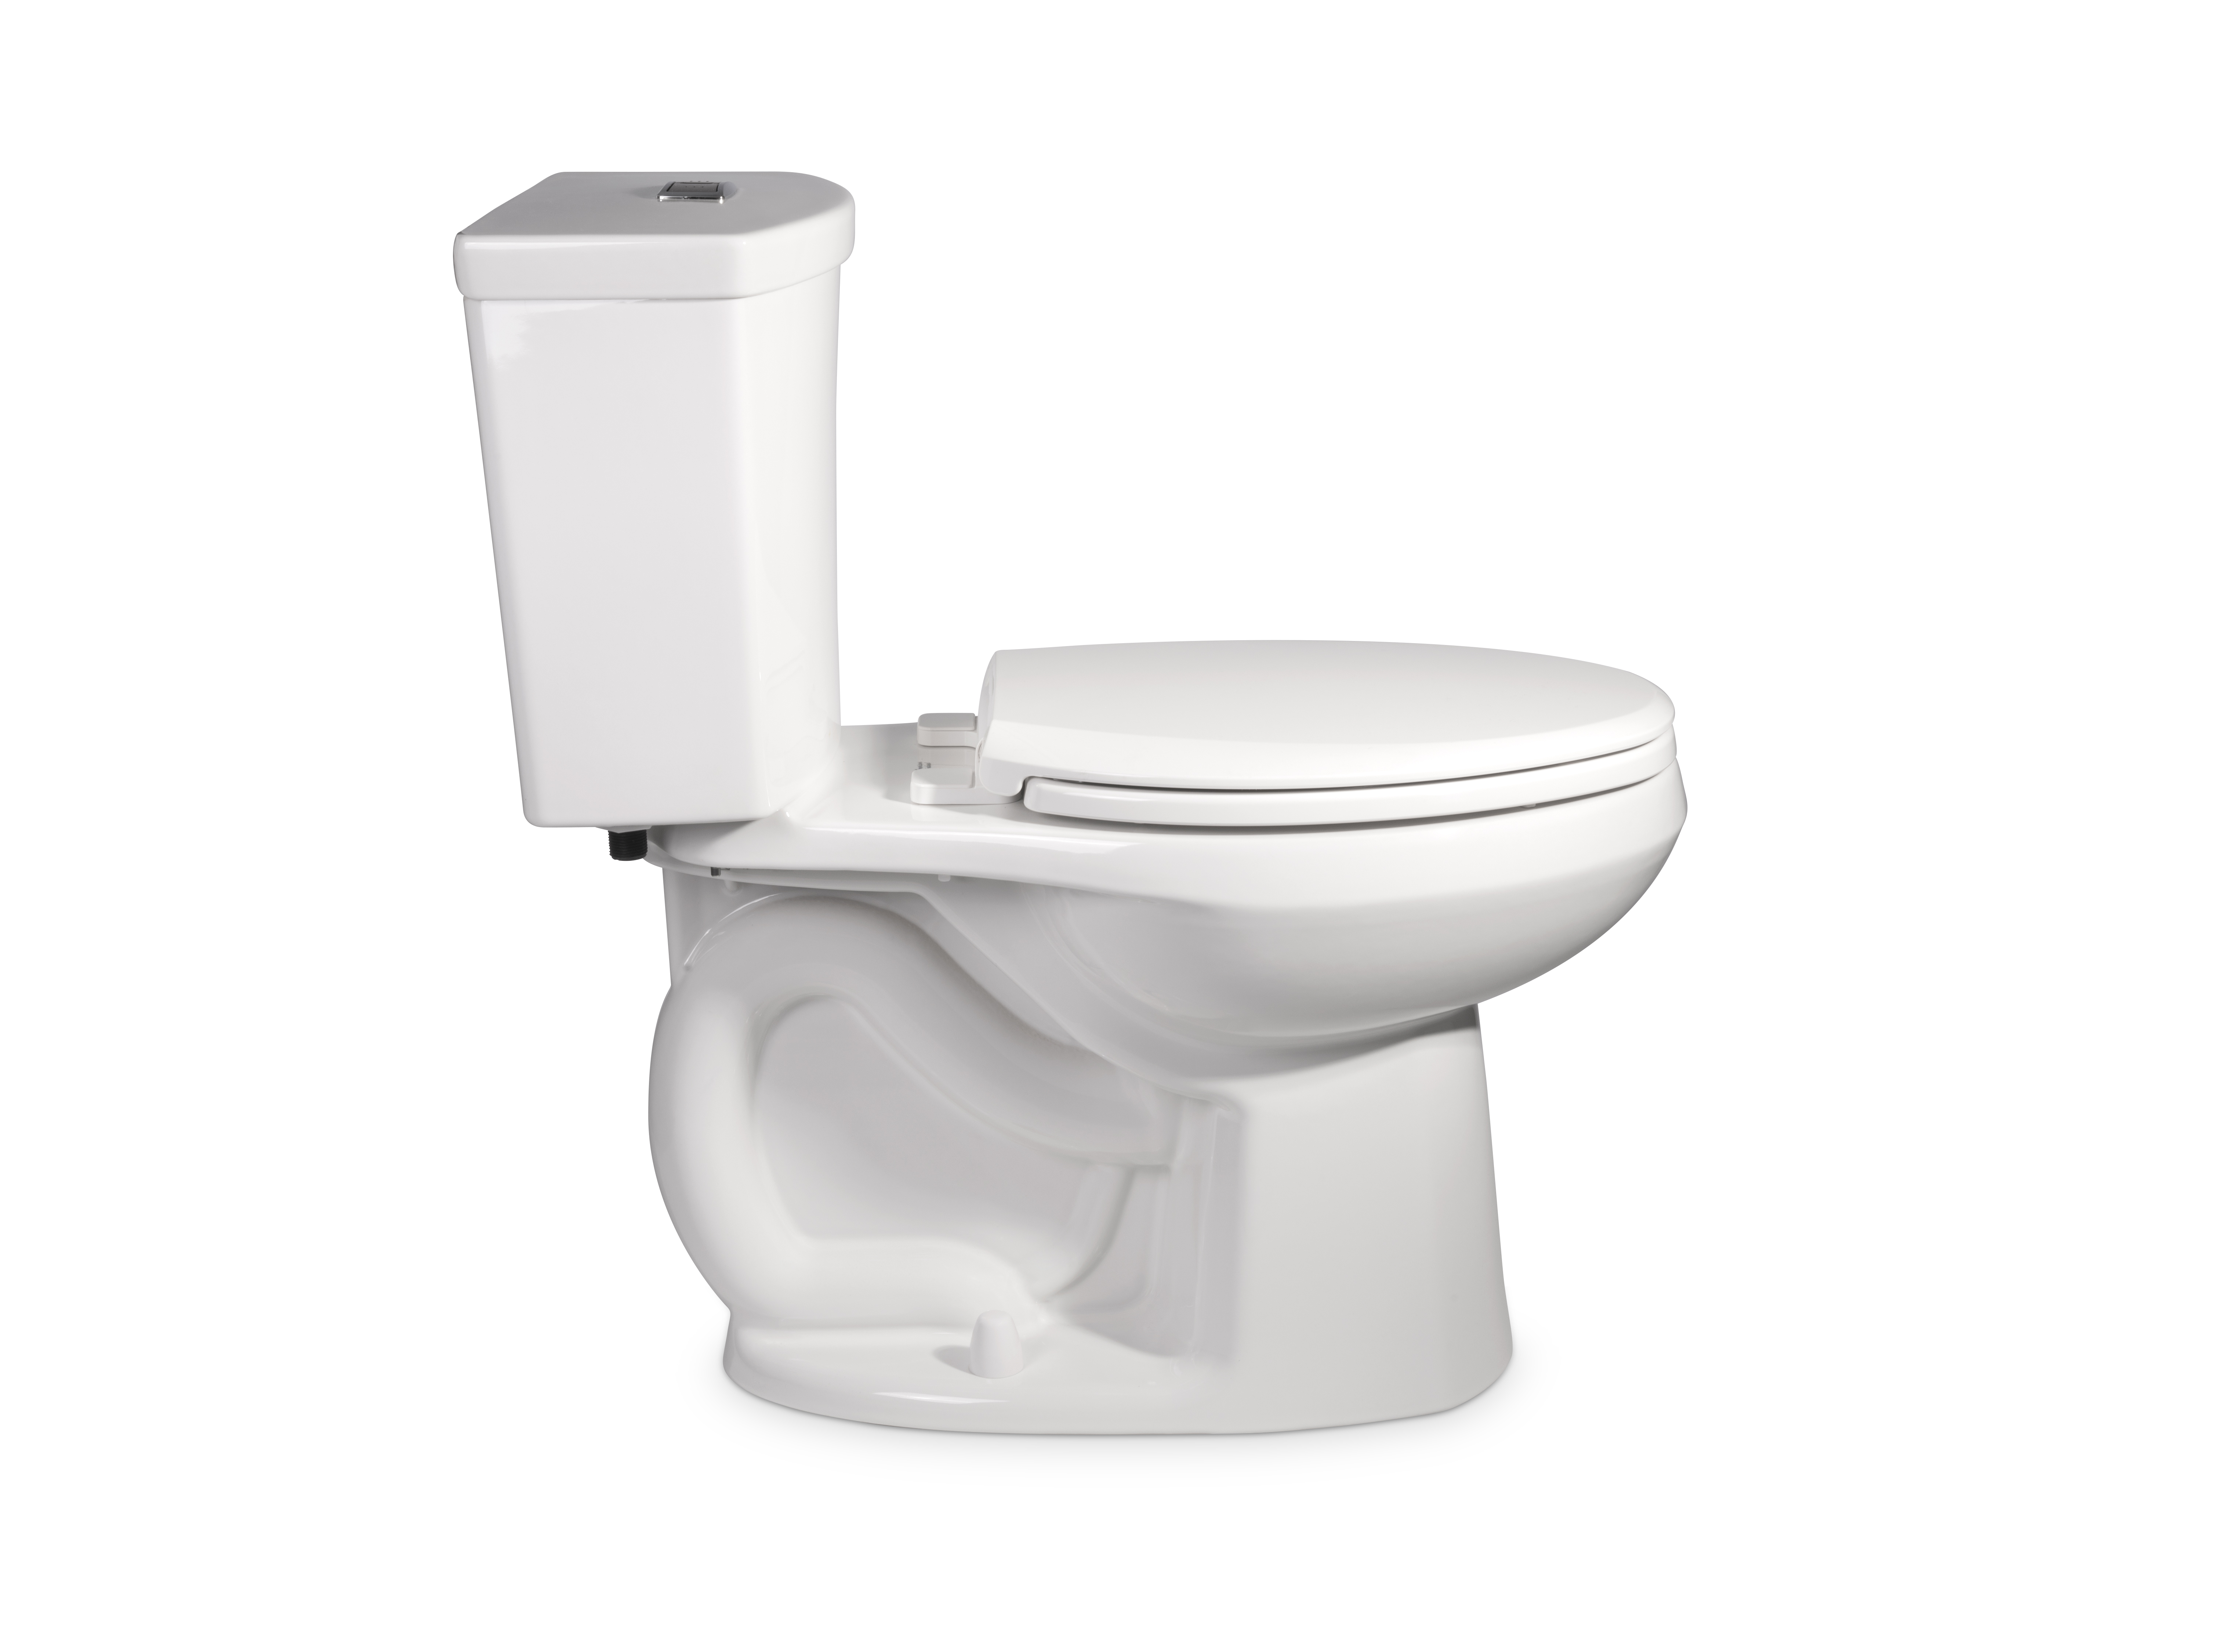 Toilette complète Ravenna 3, 2 pièces, chasse double 1,6 gpc/6,0 lpc,et 1,0 gpc/3,8 lpc, à cuvette allongée à hauteur de chaise et réservoir avec doublure, avec siège